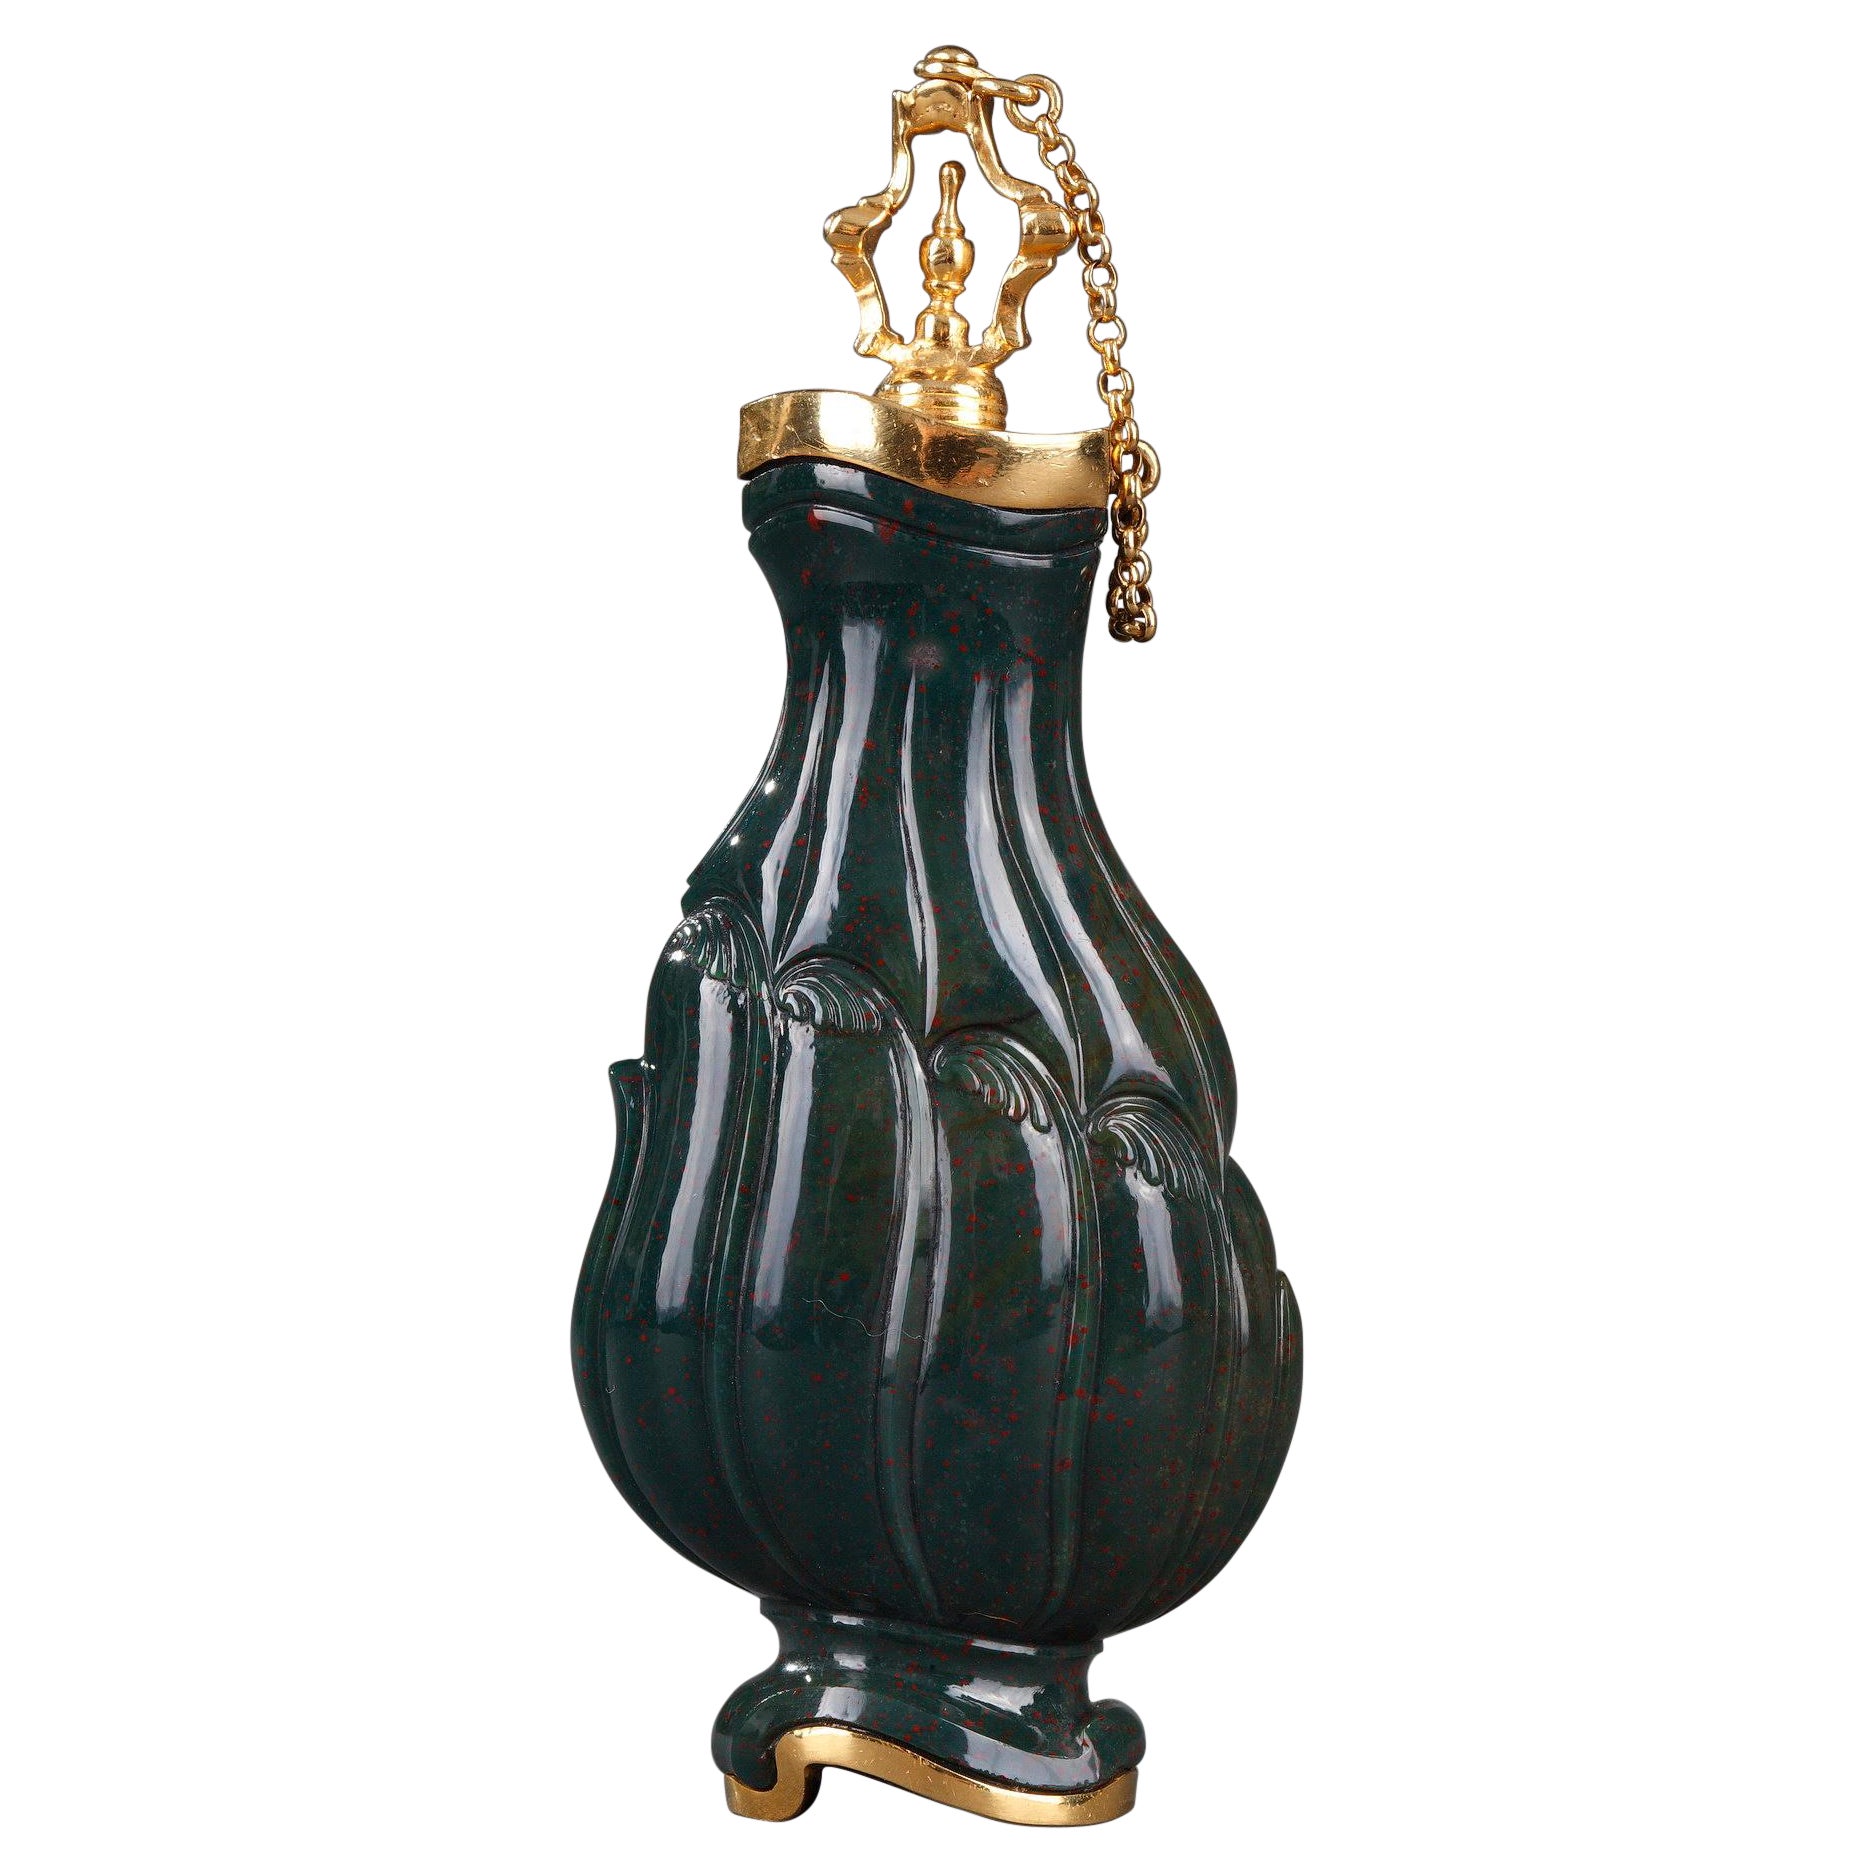 Jaspis und Gold Flask 18. Jahrhundert. Handwerkskunst des 19. Jahrhunderts